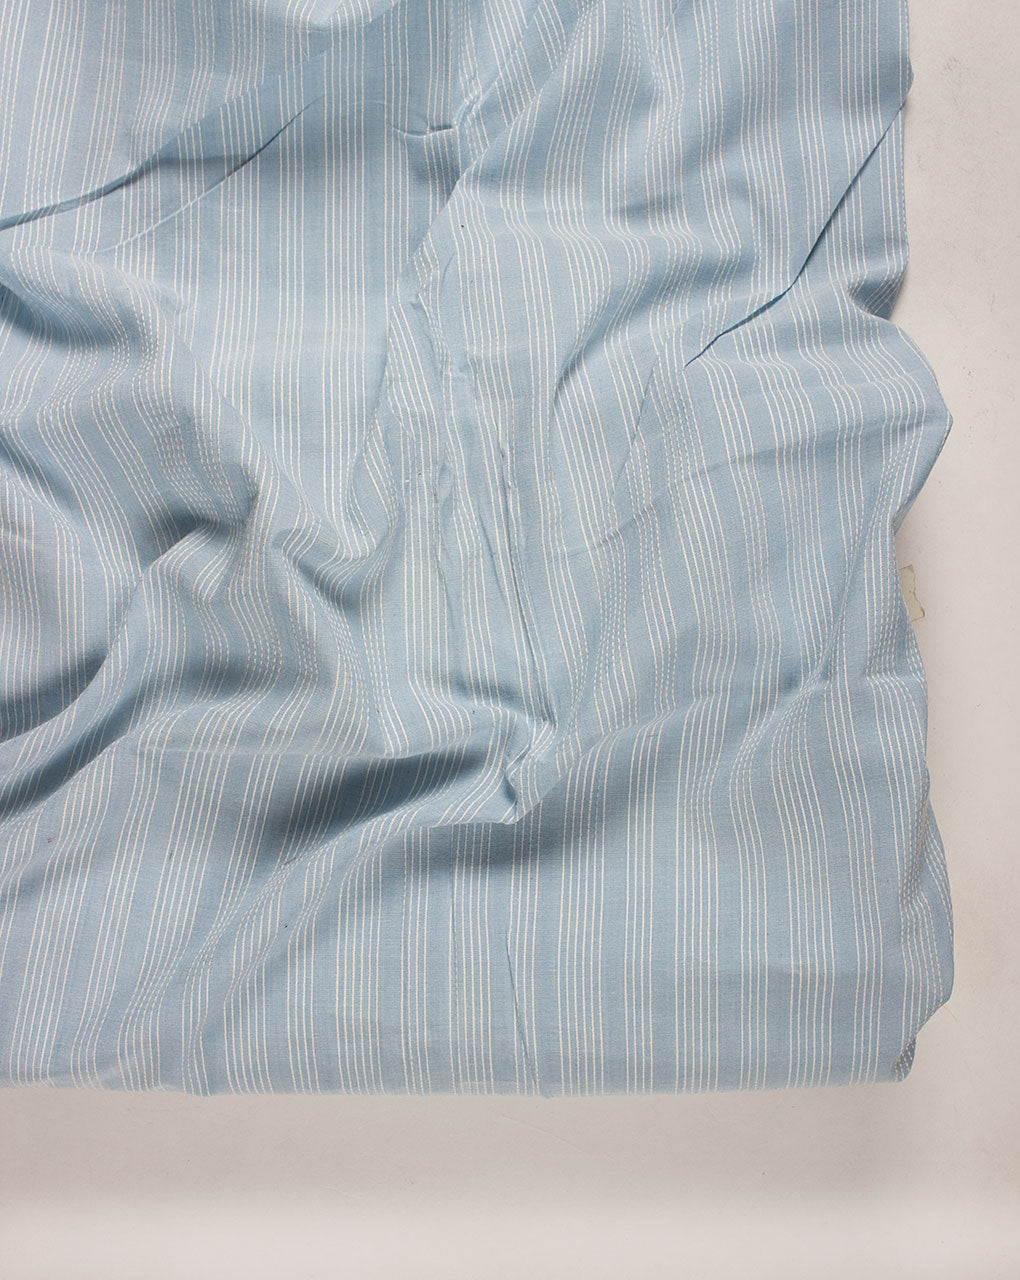 ( Pre Cut 80 CM ) Kantha Loom Textured Cotton Fabric